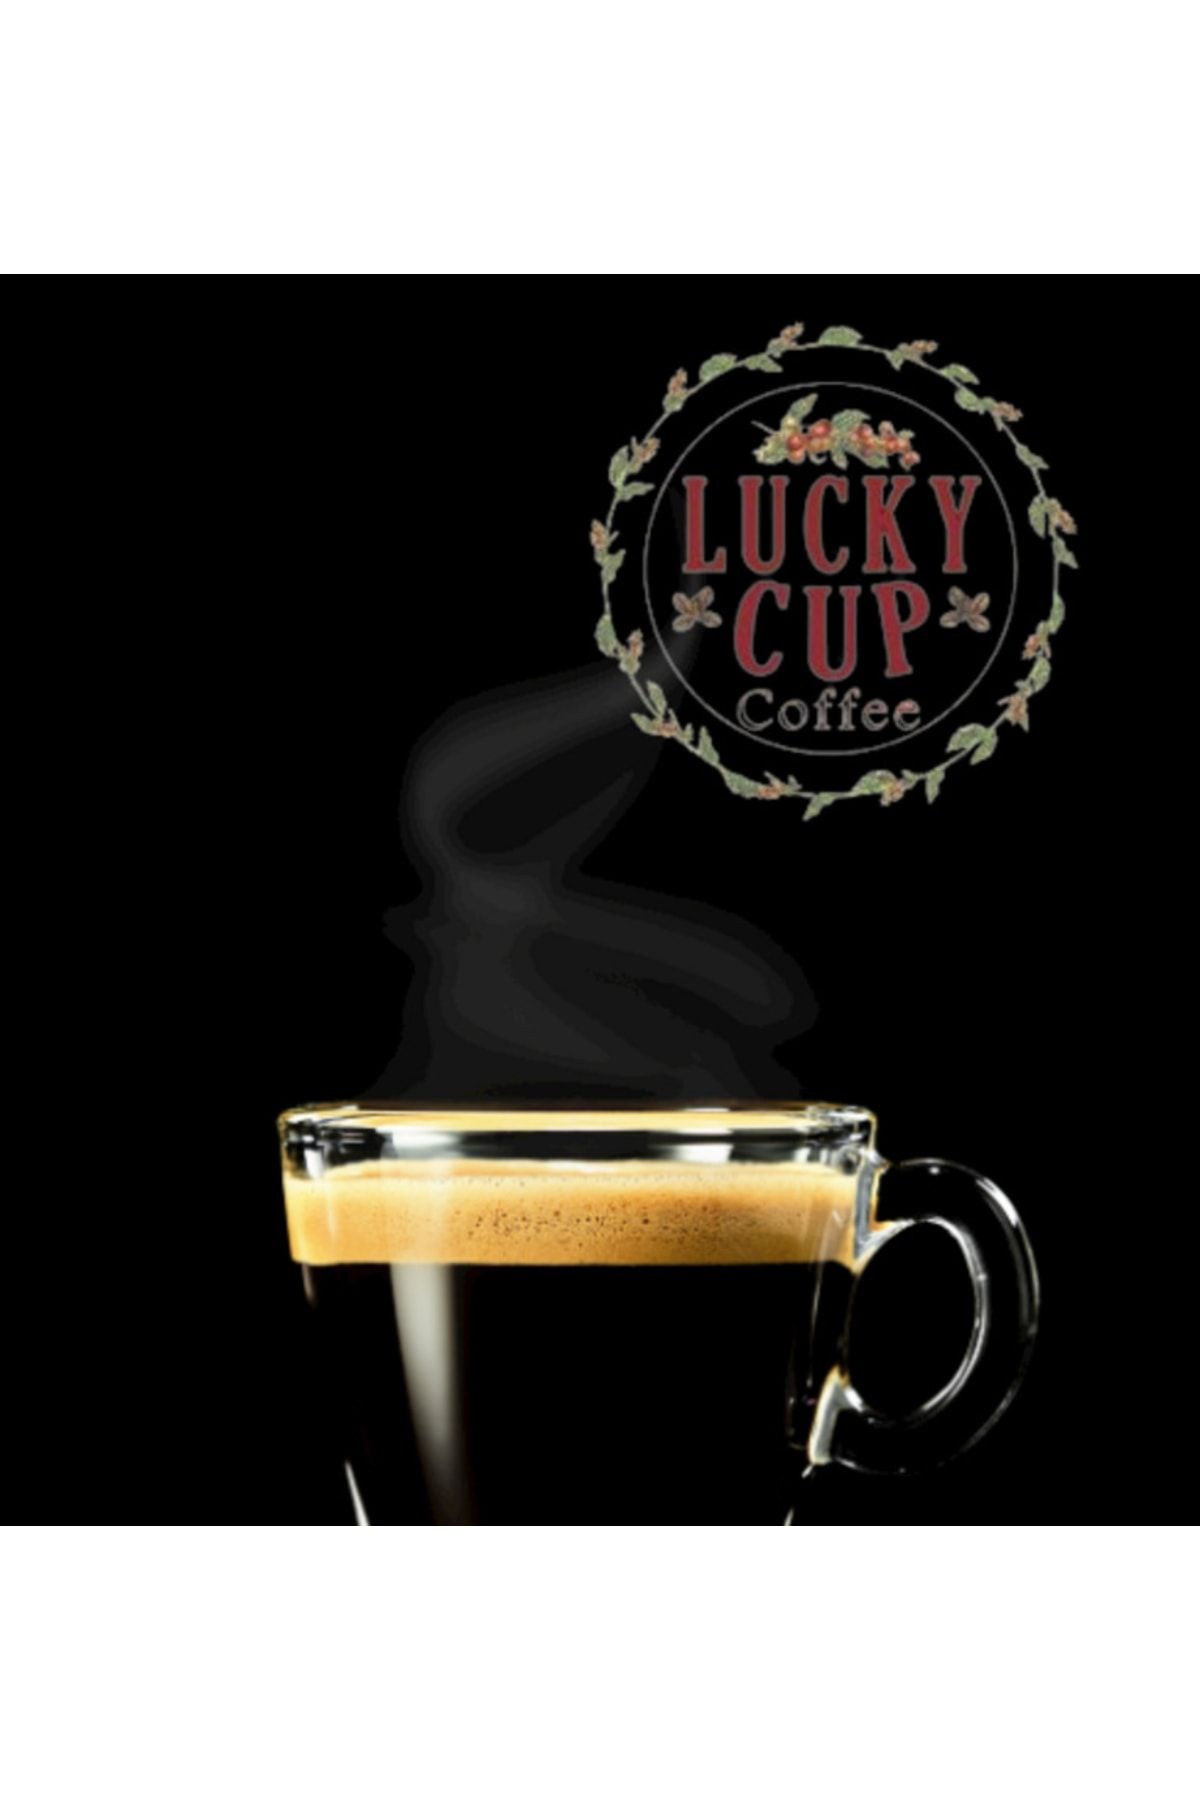 Lucky Cup Coffee Kavrulmuş Çekirdek Kahve Professional Seri 1 Kg Fiyatı,  Yorumları - Trendyol